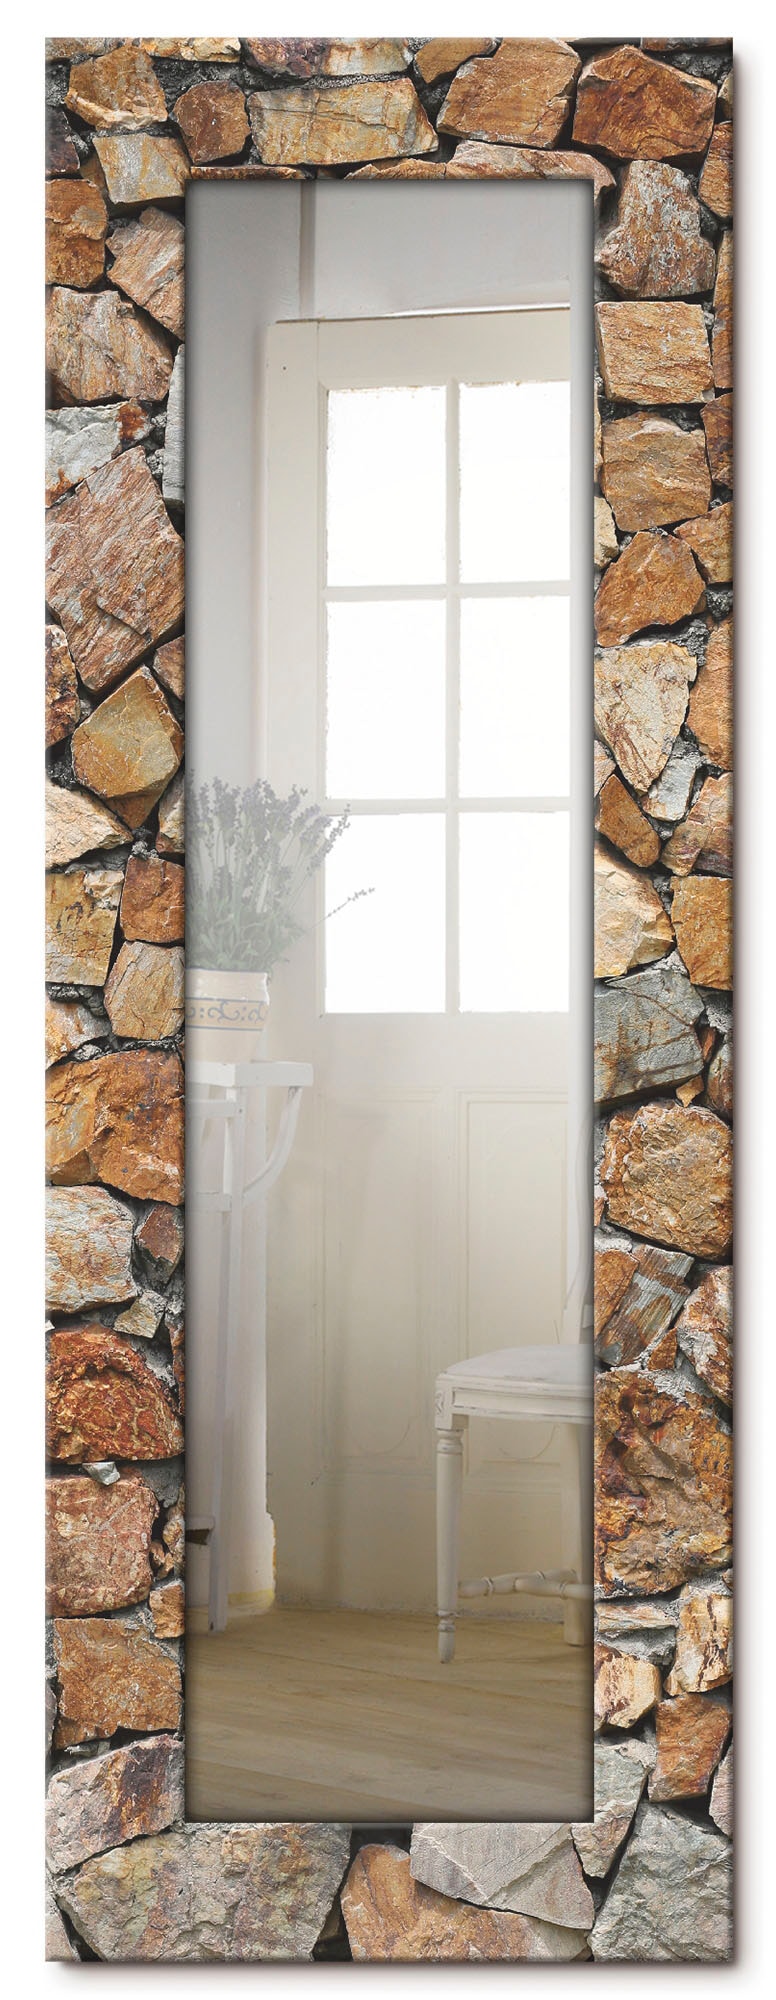 Artland Dekospiegel »Braune Steinwand«, gerahmter Ganzkörperspiegel, Wandspiegel, mit Motivrahmen, Landhaus